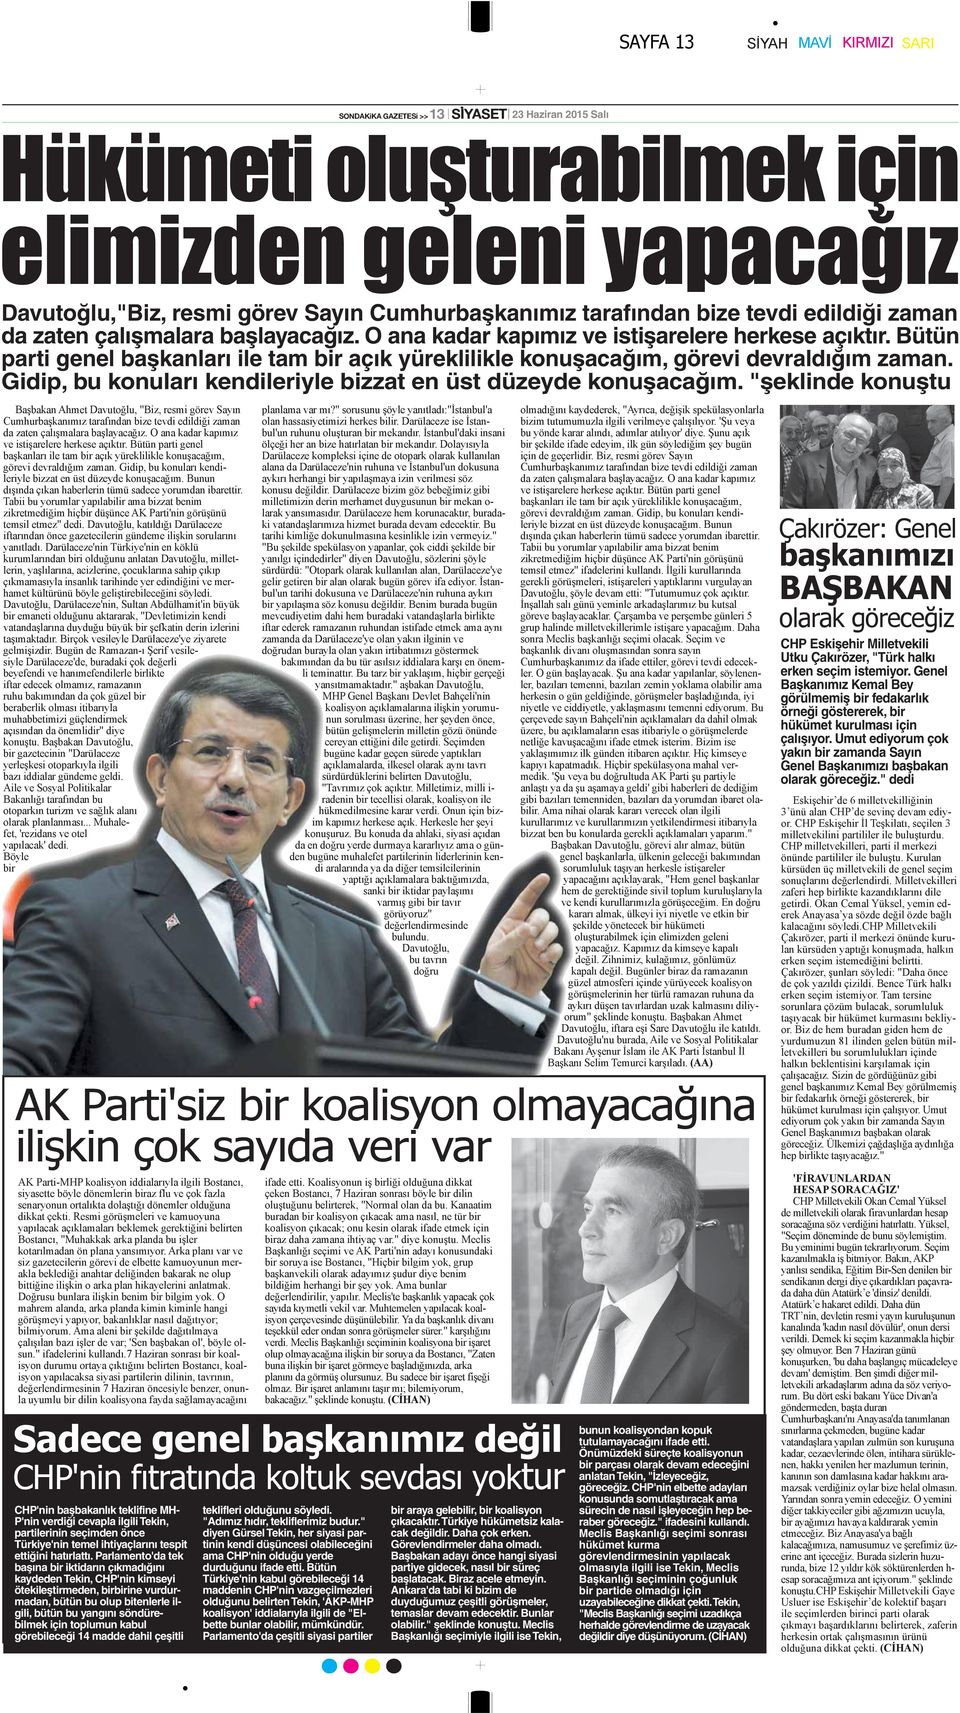 Gidip, bu konuları kendileriyle bizzat en üst düzeyde konuşacağım. "şeklinde konuştu CHP Eskişehir Milletvekili Utku Çakırözer, "Türk halkı erken seçim istemiyor.